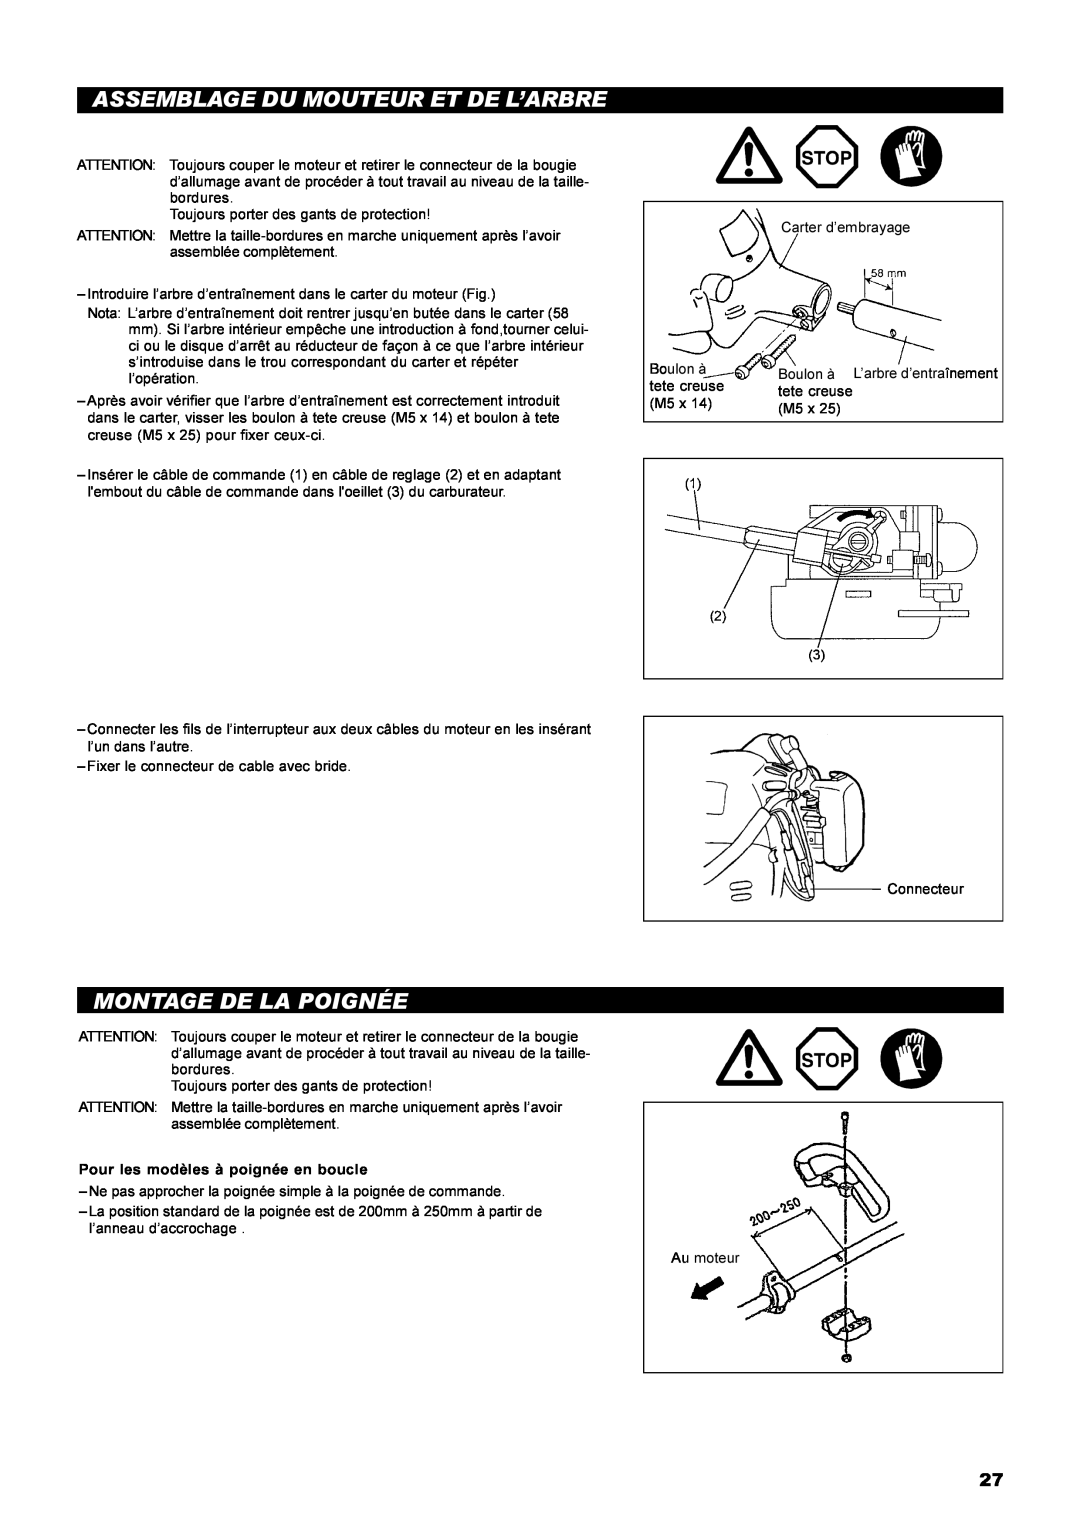 Dolmar MS-22C instruction manual Assemblage Du Mouteur Et De L’Arbre, Montage De La Poignée, L’arbre d’entraînement 